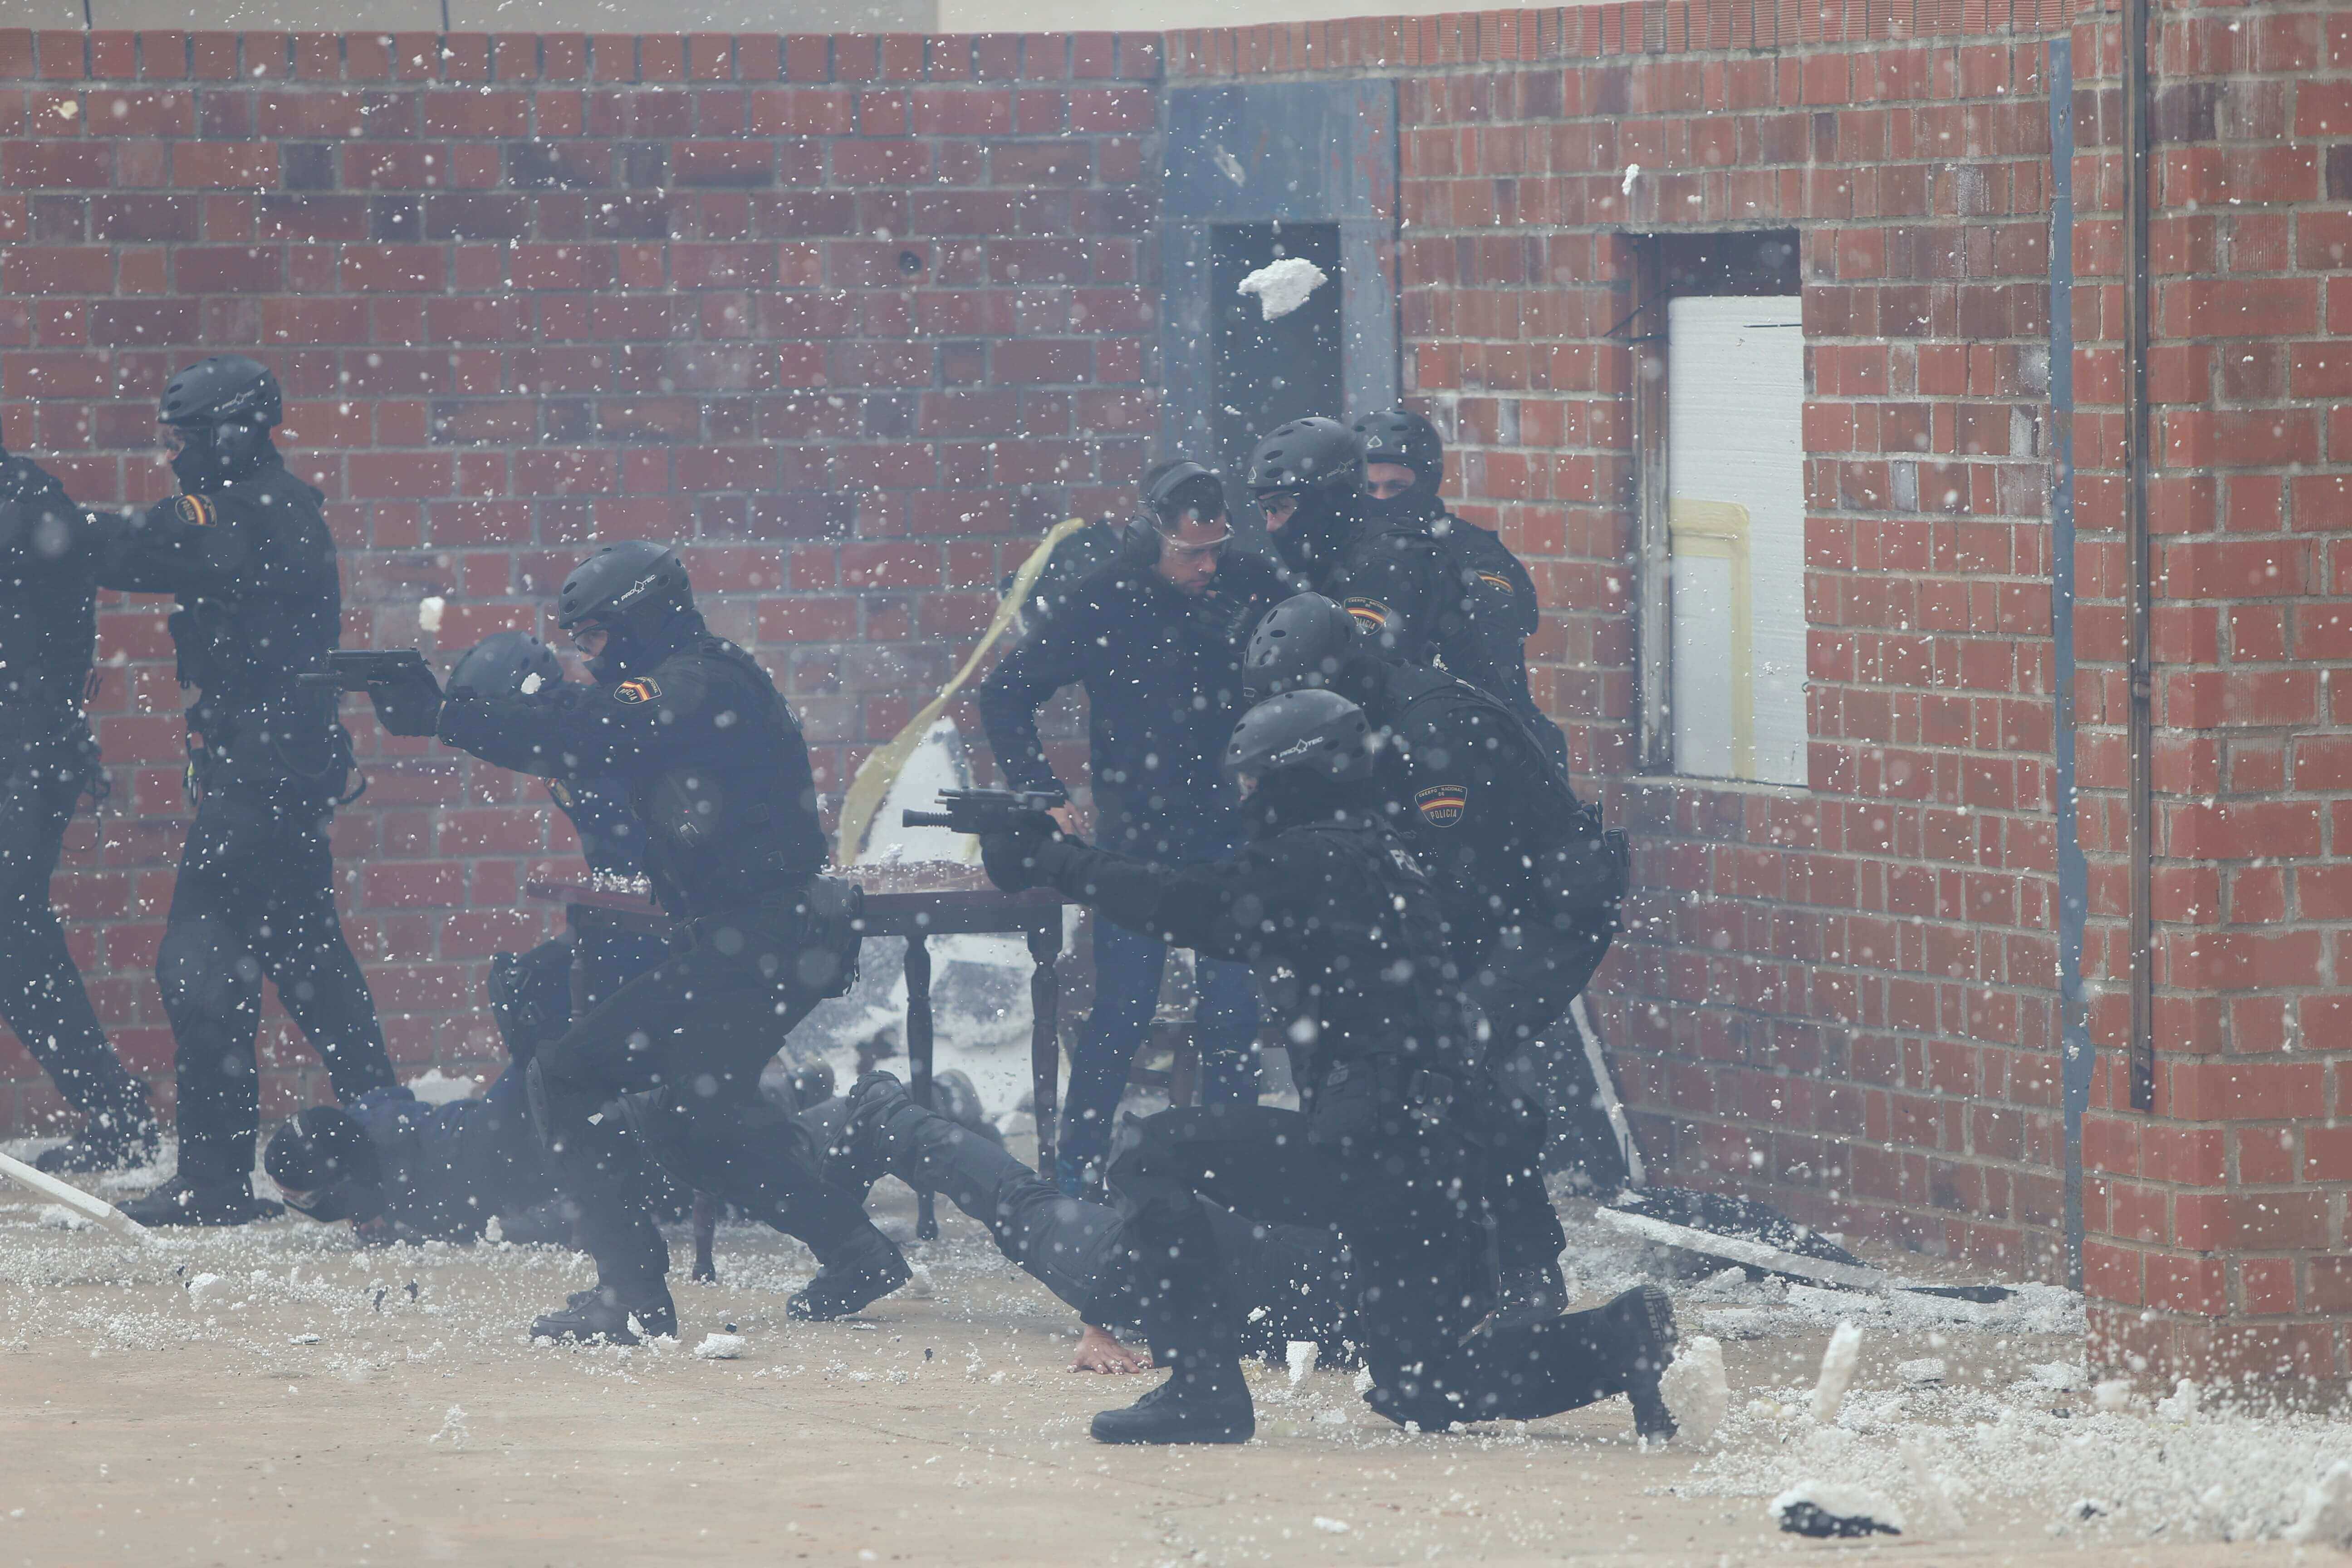 Unidad GEO de la Polícia Nacional en una práctica. Policía de rodillas apuntando con el arma